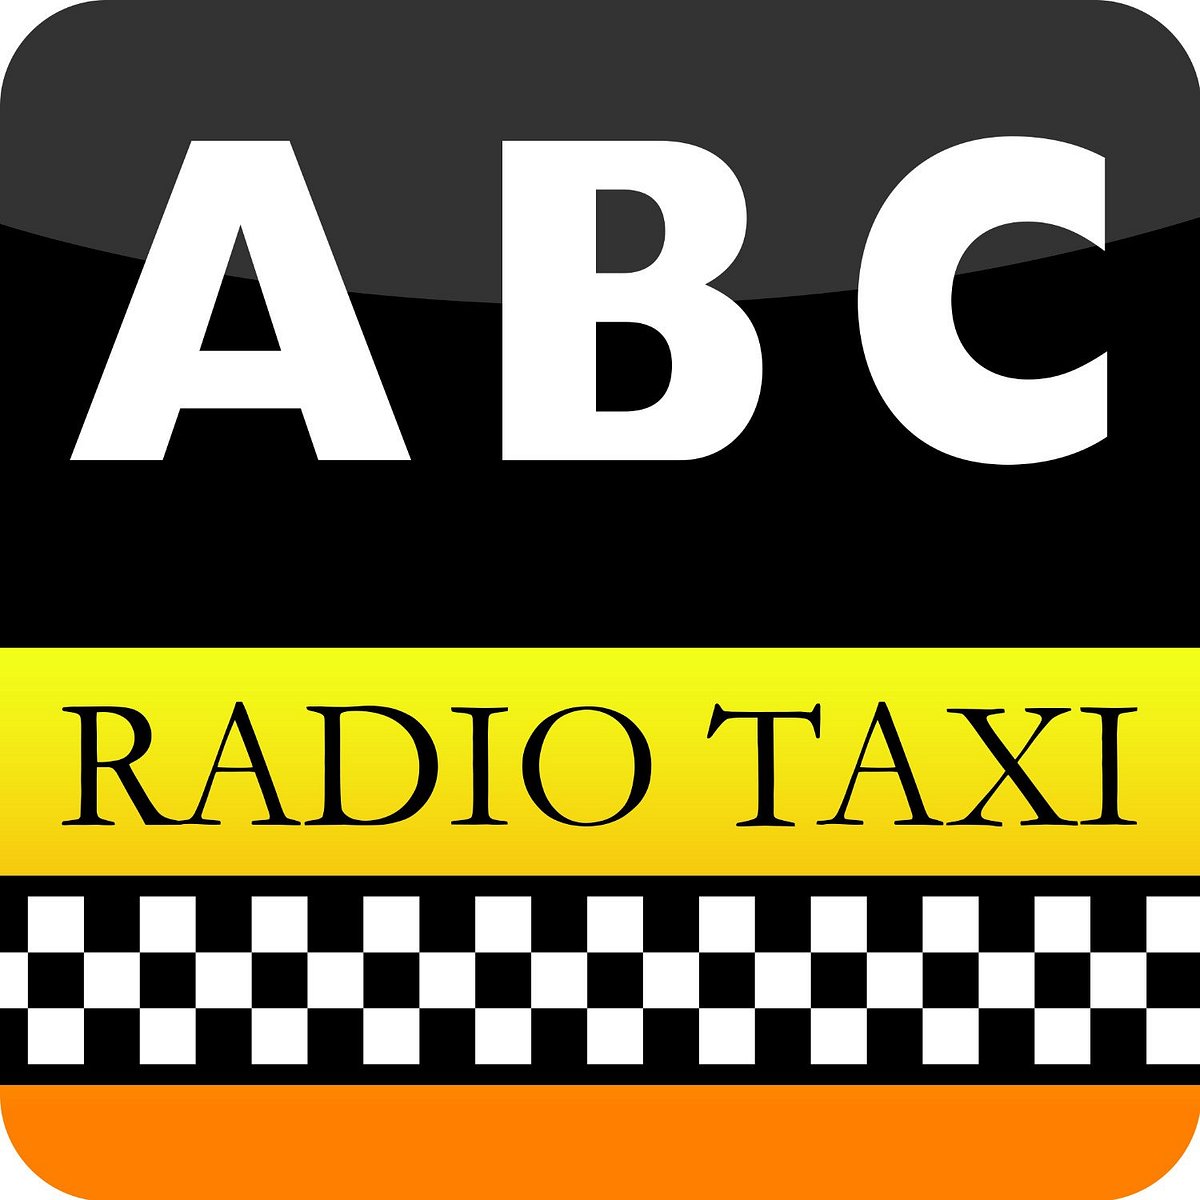 Радио такси москва. Радио такси. The ABC Oxford. ABC Taxi. ABC Radio.